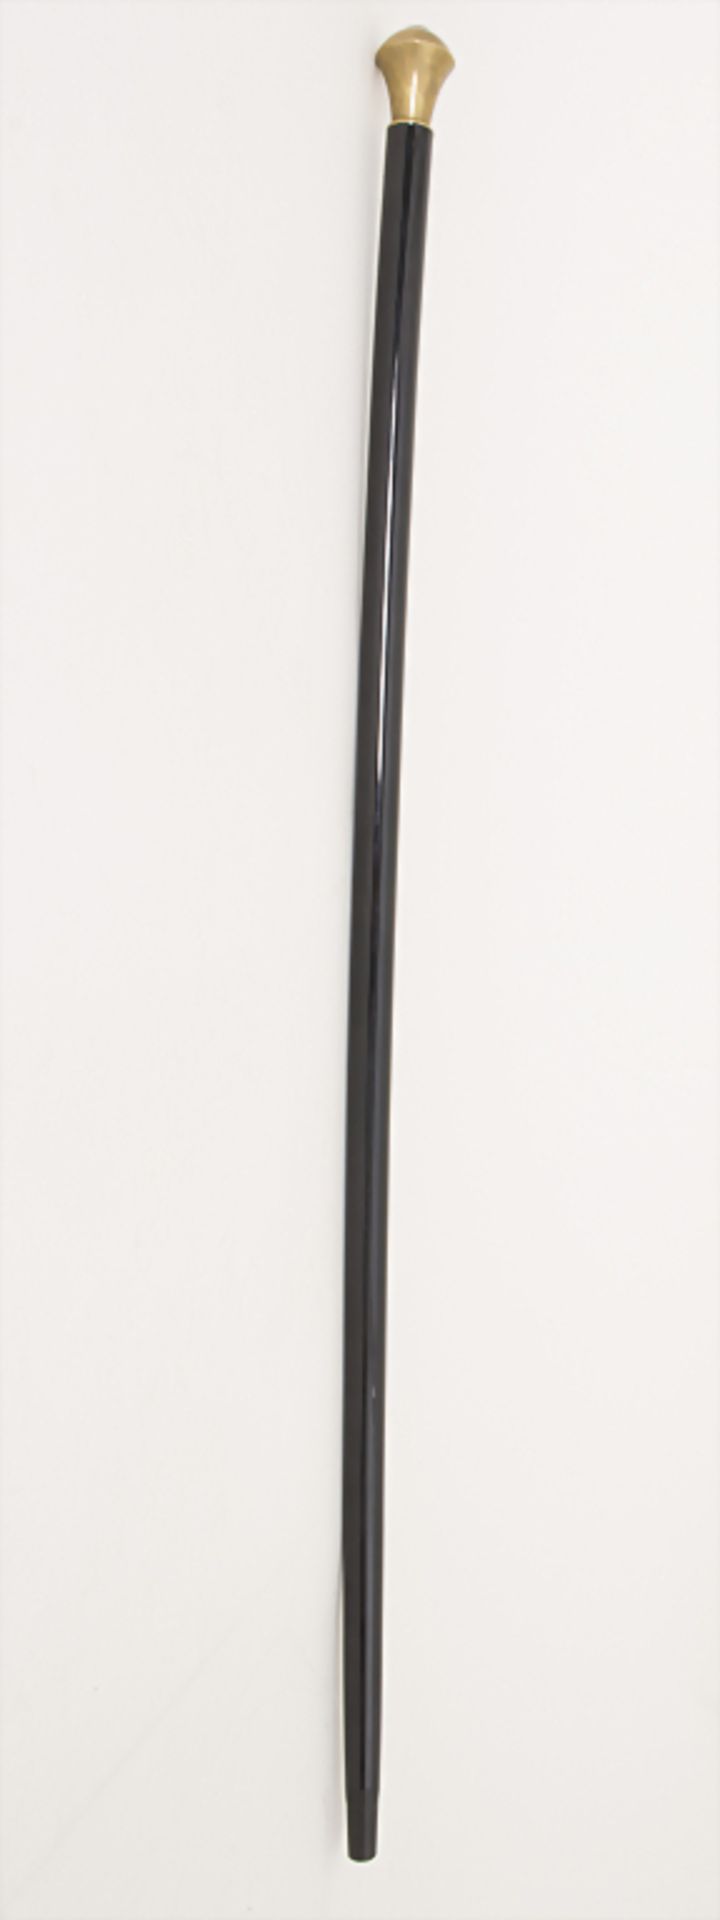 Gehstock mit Messingknauf / A cane with brass knob, um 1900 - Bild 2 aus 2